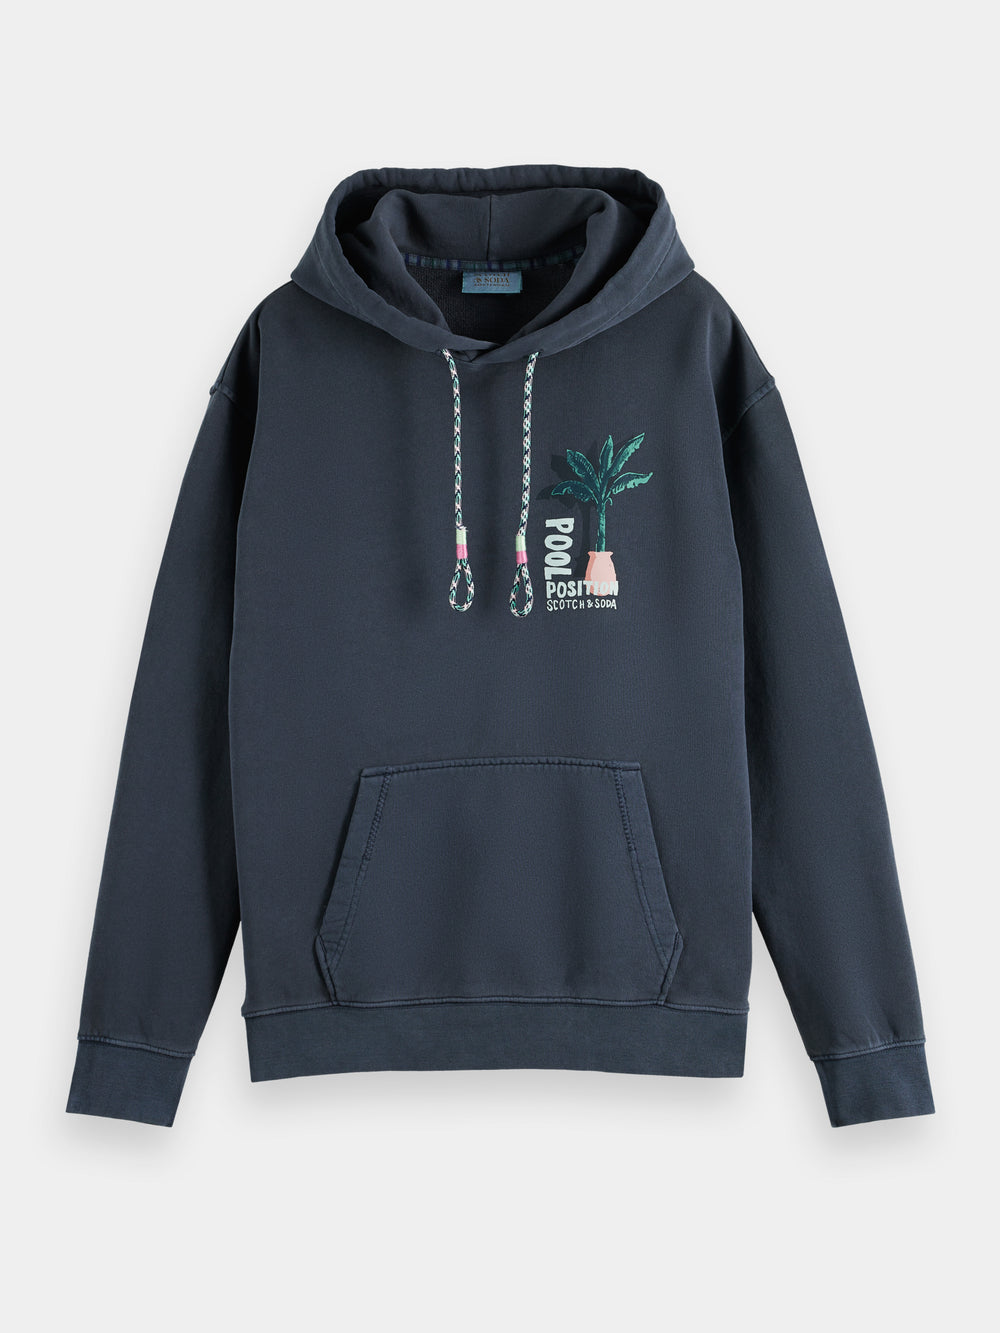 Garment-dyed artwork hoodie - Scotch & Soda AU